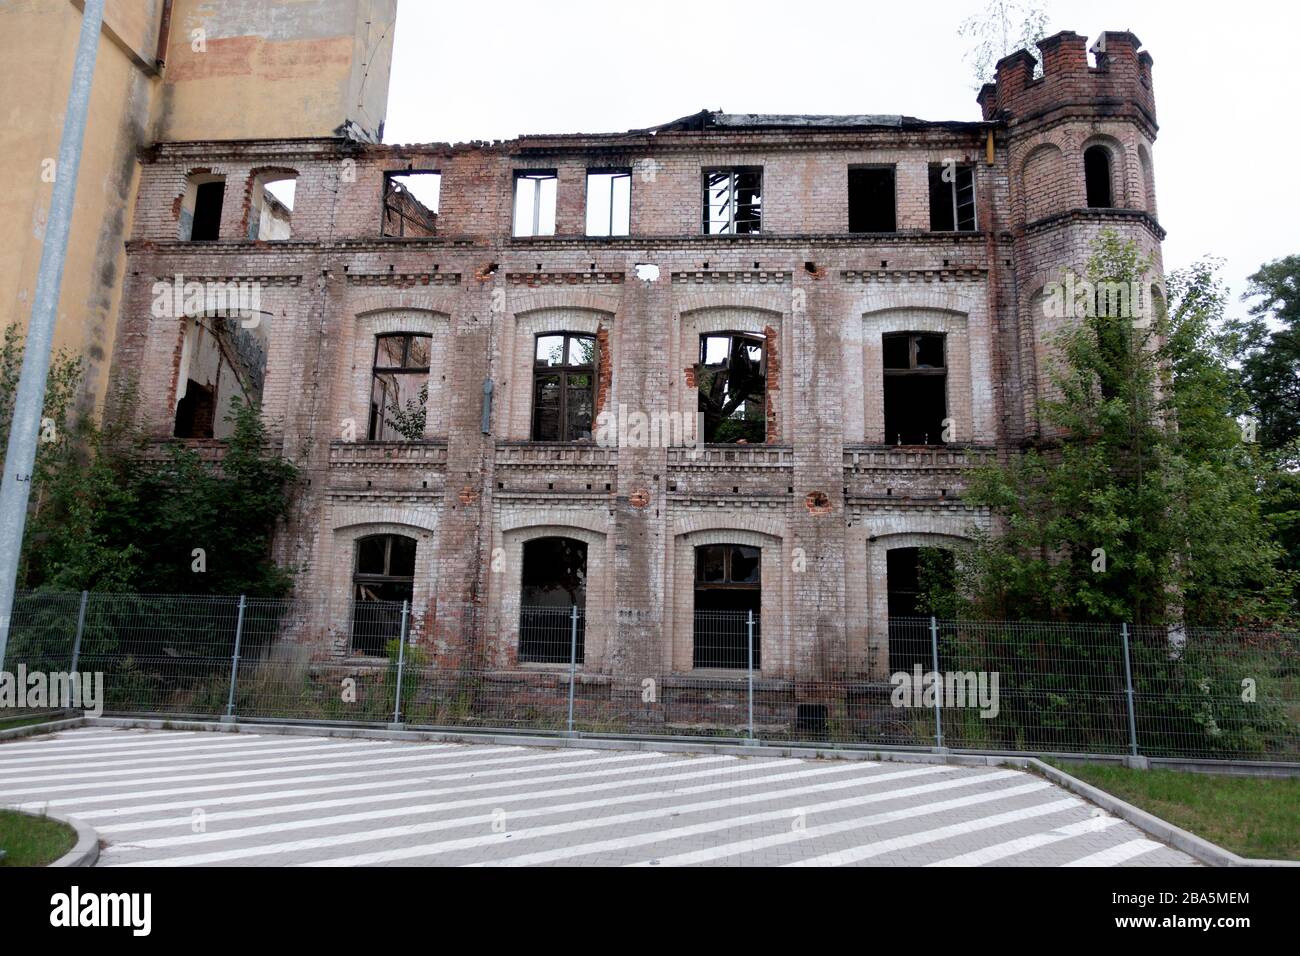 Verlassene interessante Gebäude, die saniert werden müssen. Tomaszow Mazowiecki Mittelpolen Stockfoto